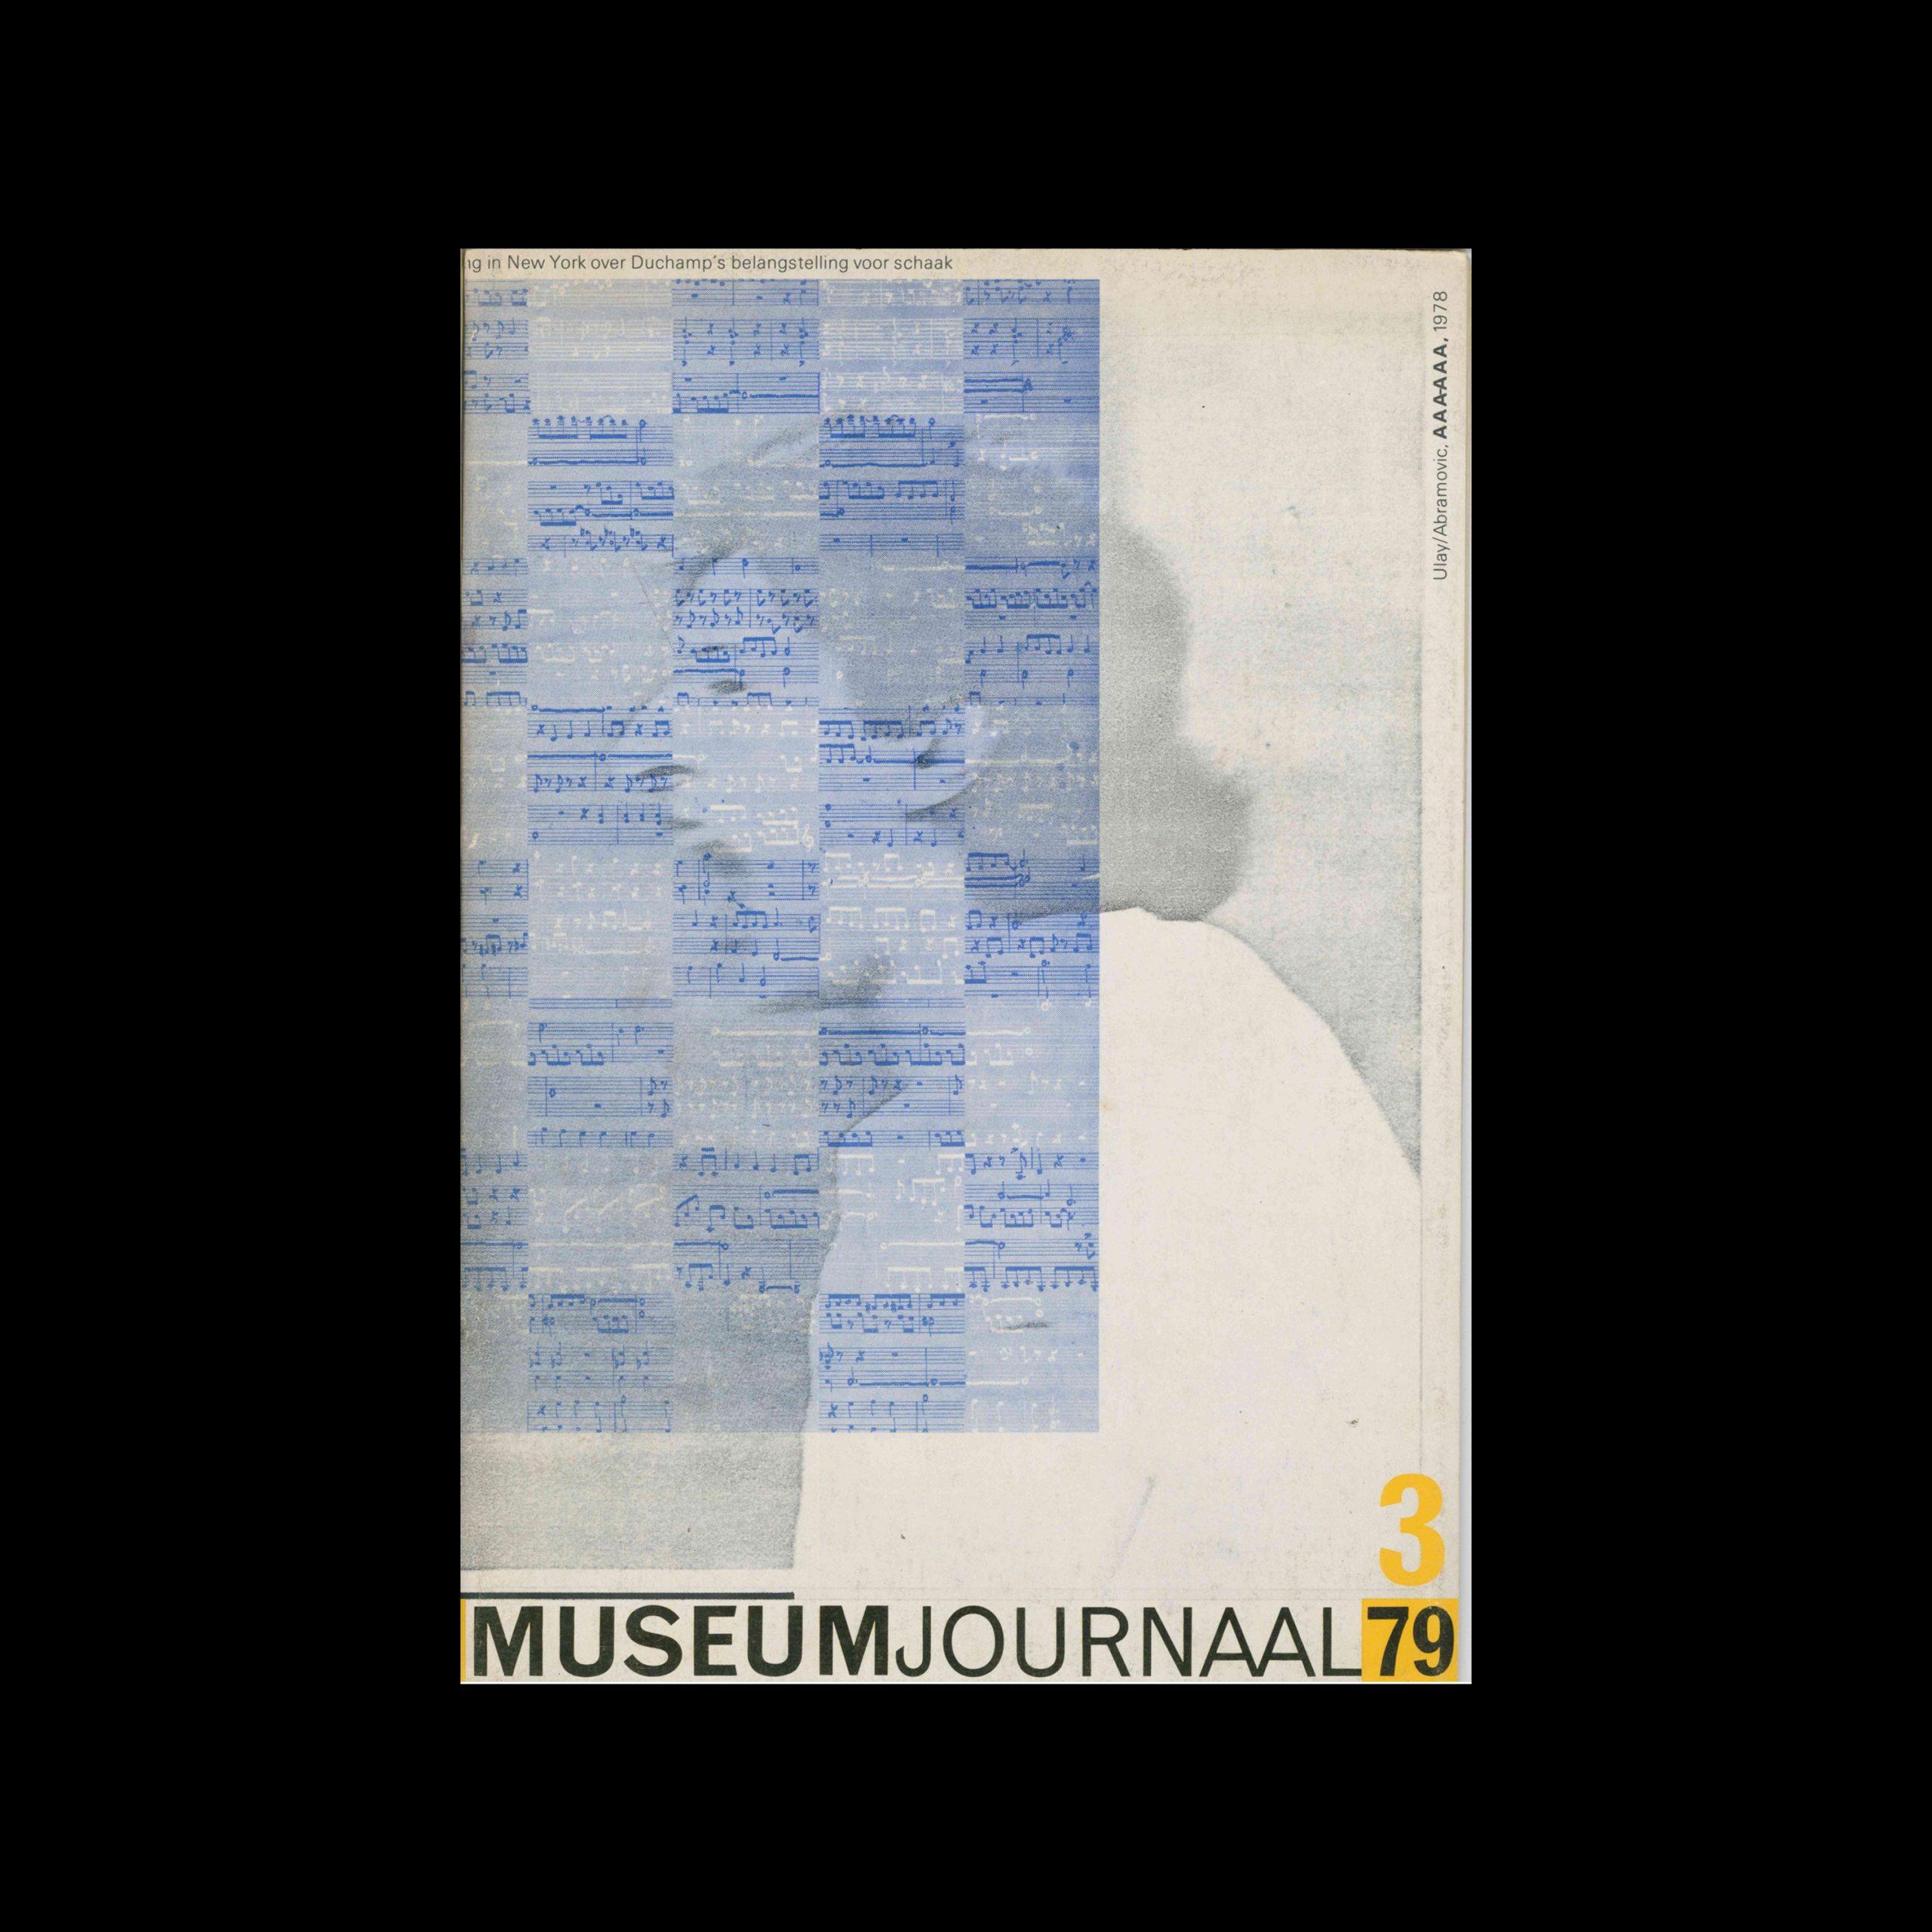 Museumjournaal, Serie 24 no3, 1979. Cover design by Jan van Toorn.